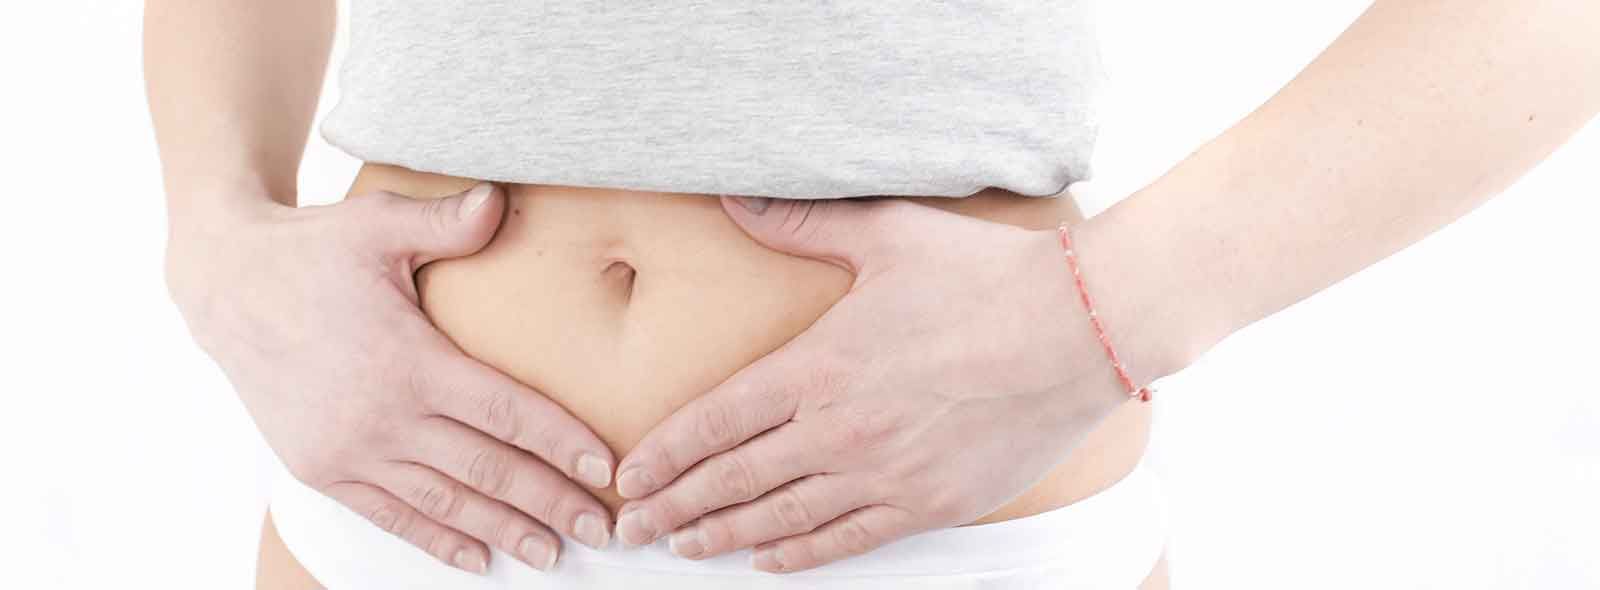 Setto uterino intervento: benefici e rischi